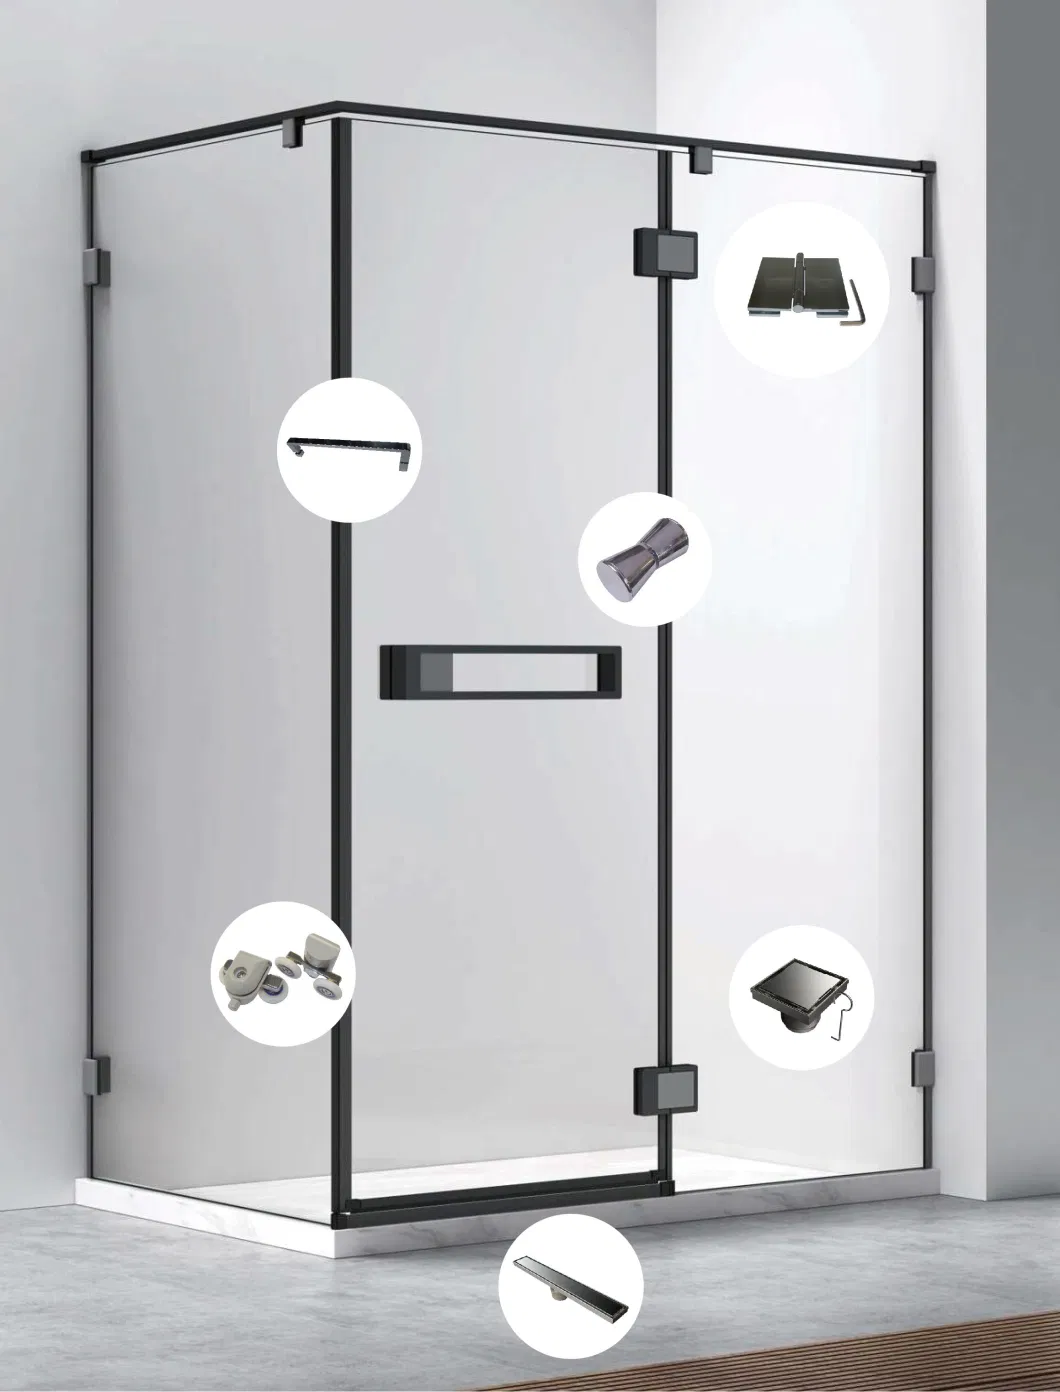 Zinc Alloy Shower Door Handle-Round Handle of Shower Enclosure